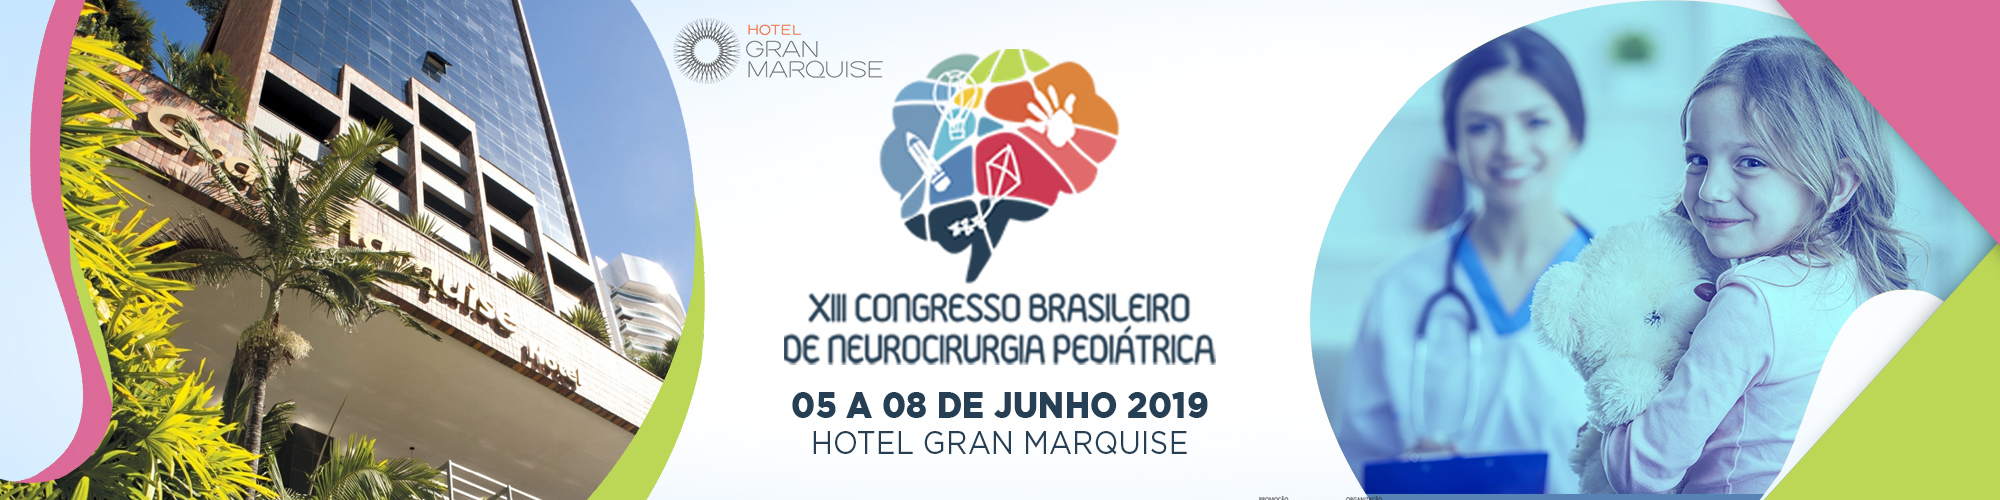 XIII Congresso Brasileiro de Neurocirurgia Pediátrica